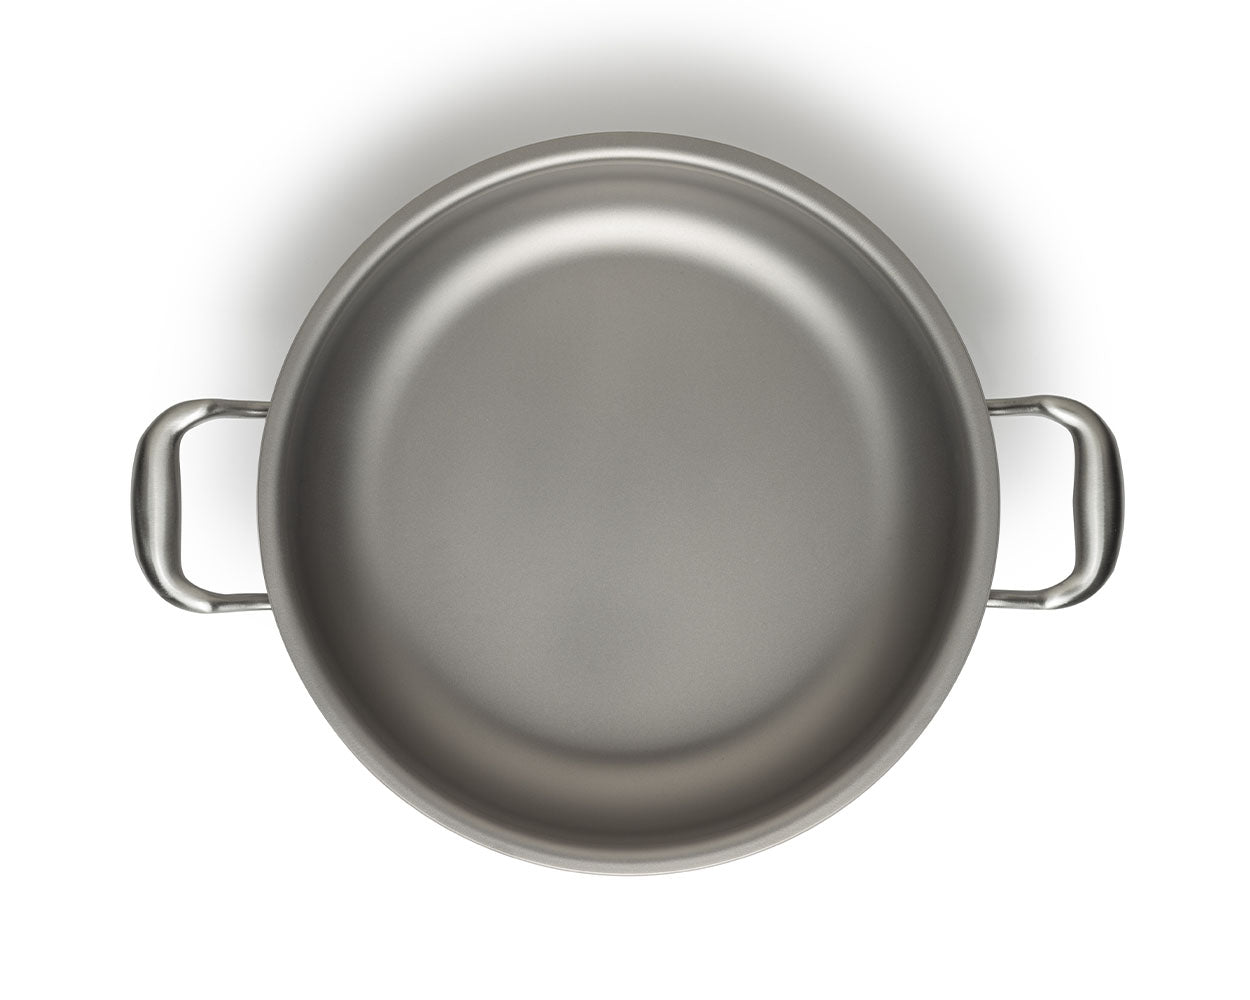 Sauté pan ∅ 30 cm - Pure TITANIUM Cooking Surface